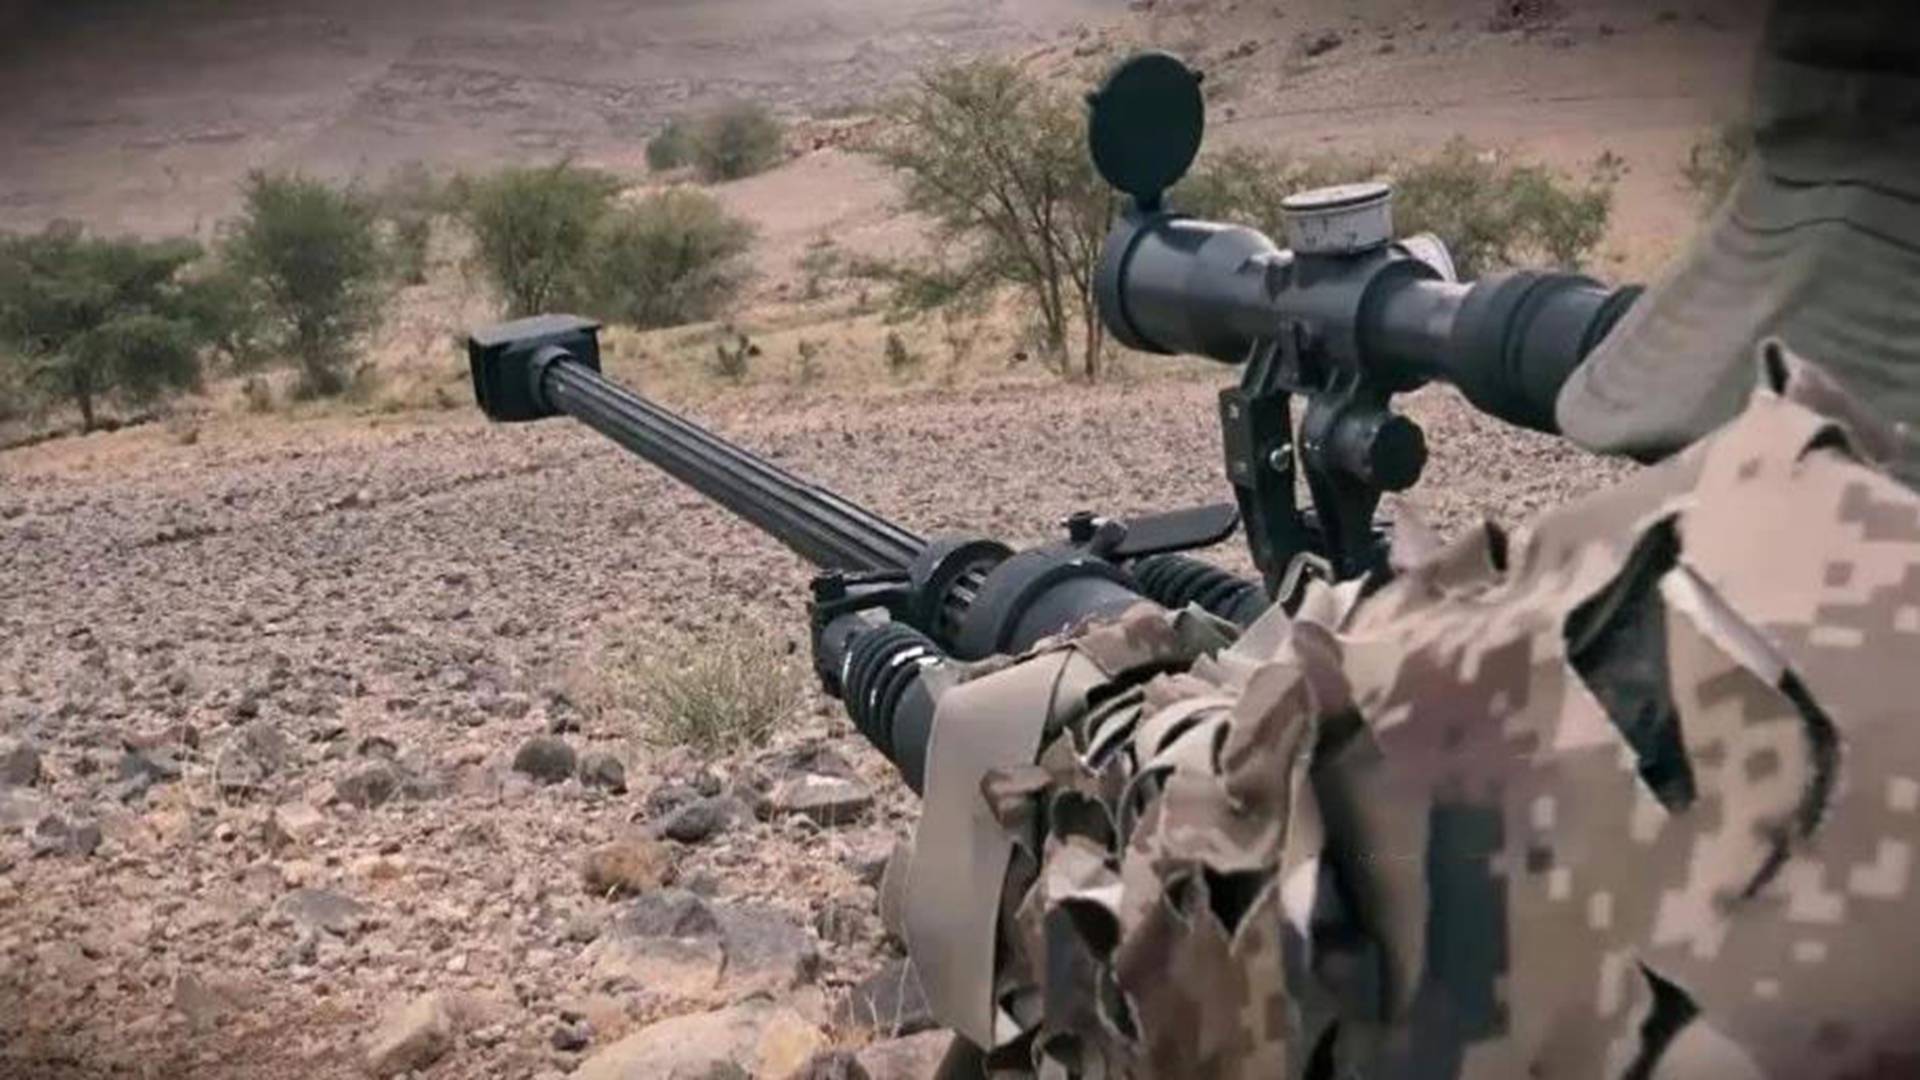 原创也门魔改反器材狙击炮,构造简单且外观粗糙,火力效果十分强悍